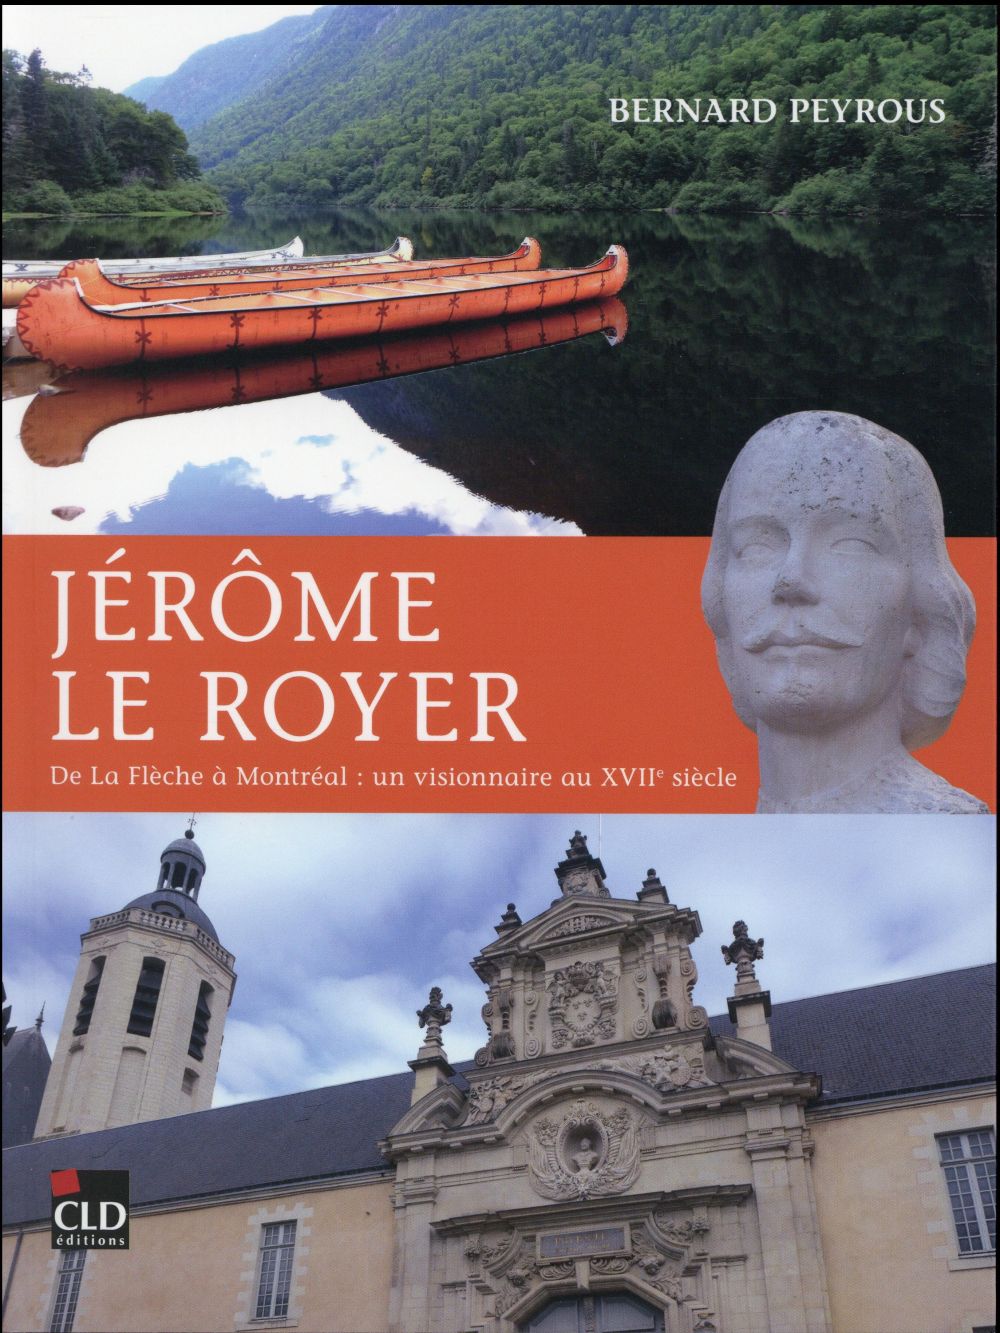 JEROME LE ROYER DE LA FLECHE A MONTREAL